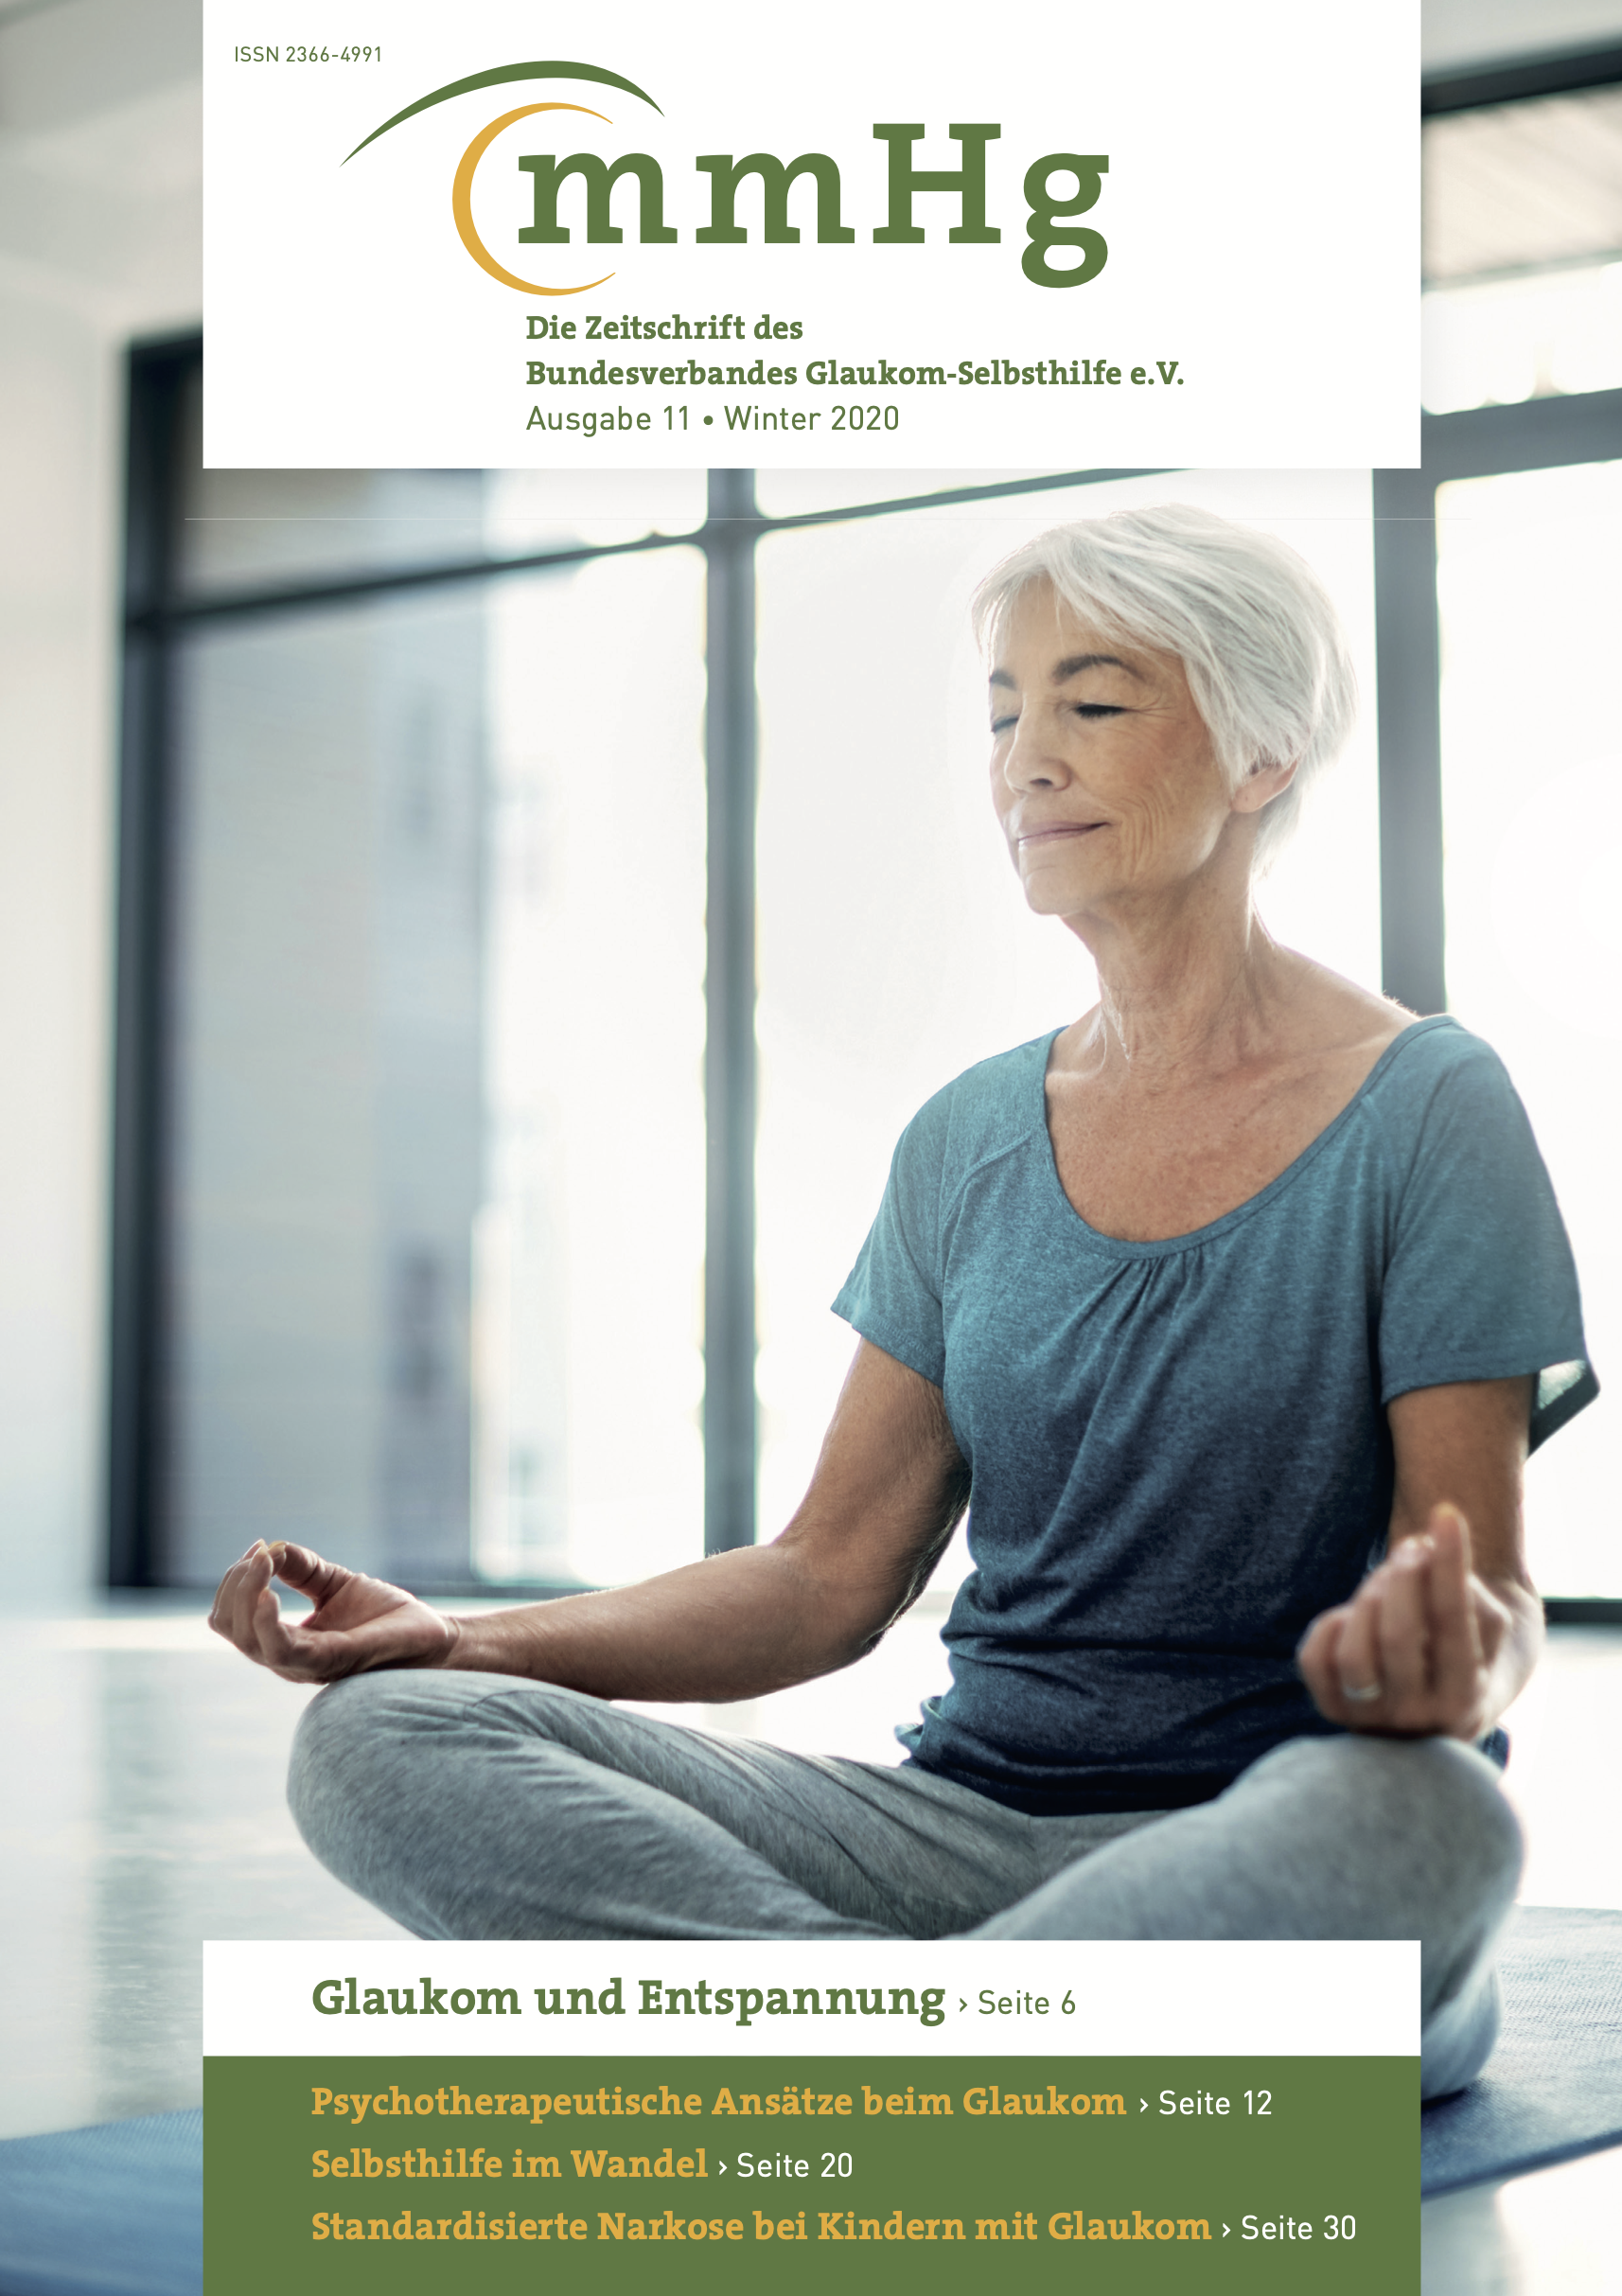 mmHg Ausgabe 11 Winter 2020: Frau mit grauen haaren auf einer Yogamatte im Schneidersitz